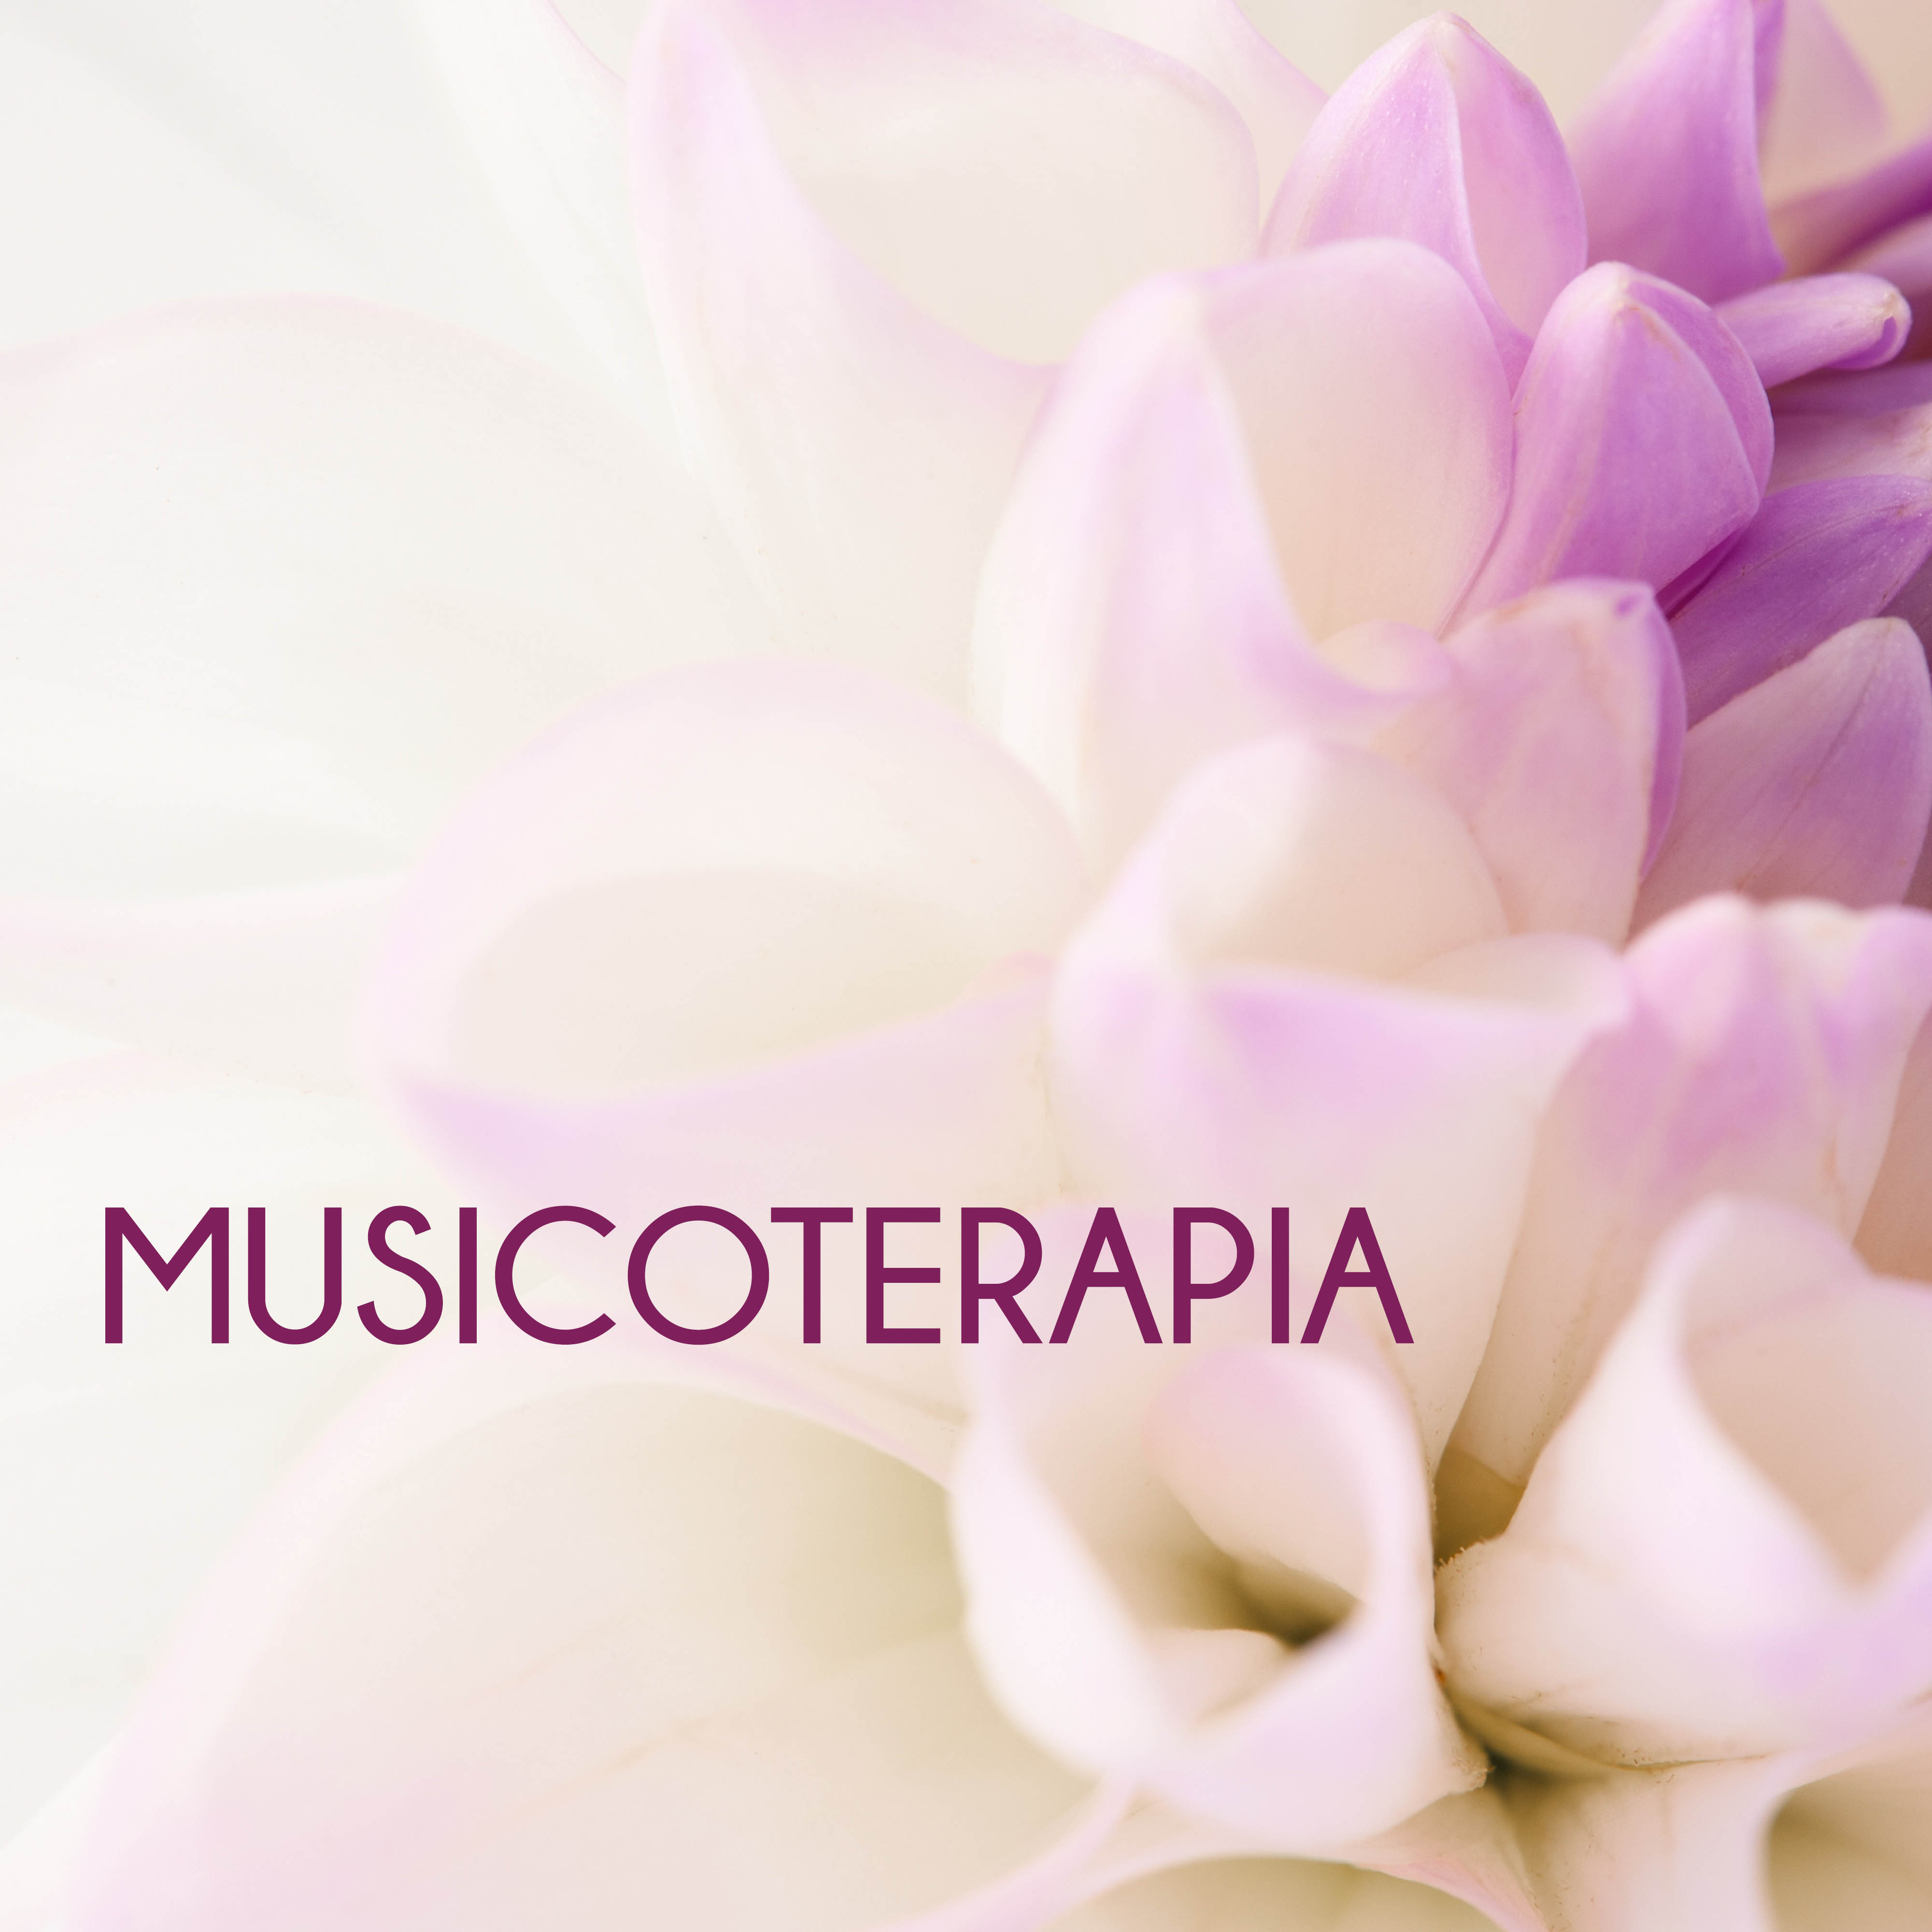 Musicoterapia - Musica di Sottofondo per Terapia del Suono & Meditazione Profonda